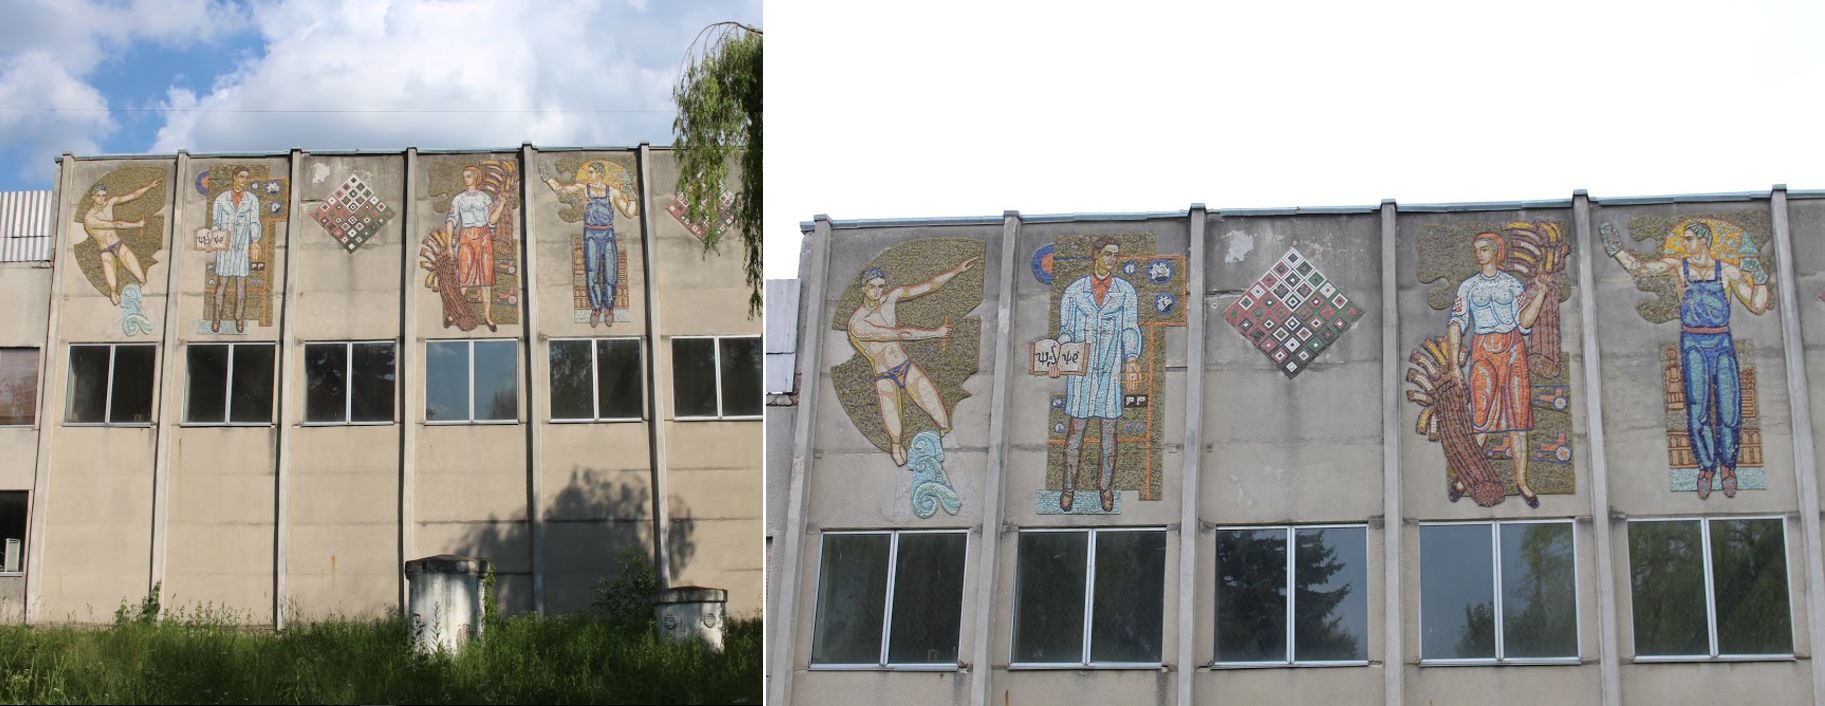 Тернопіль монументальний: колекція радянських мозаїк на мурах (Фото) -  ПОГЛЯД